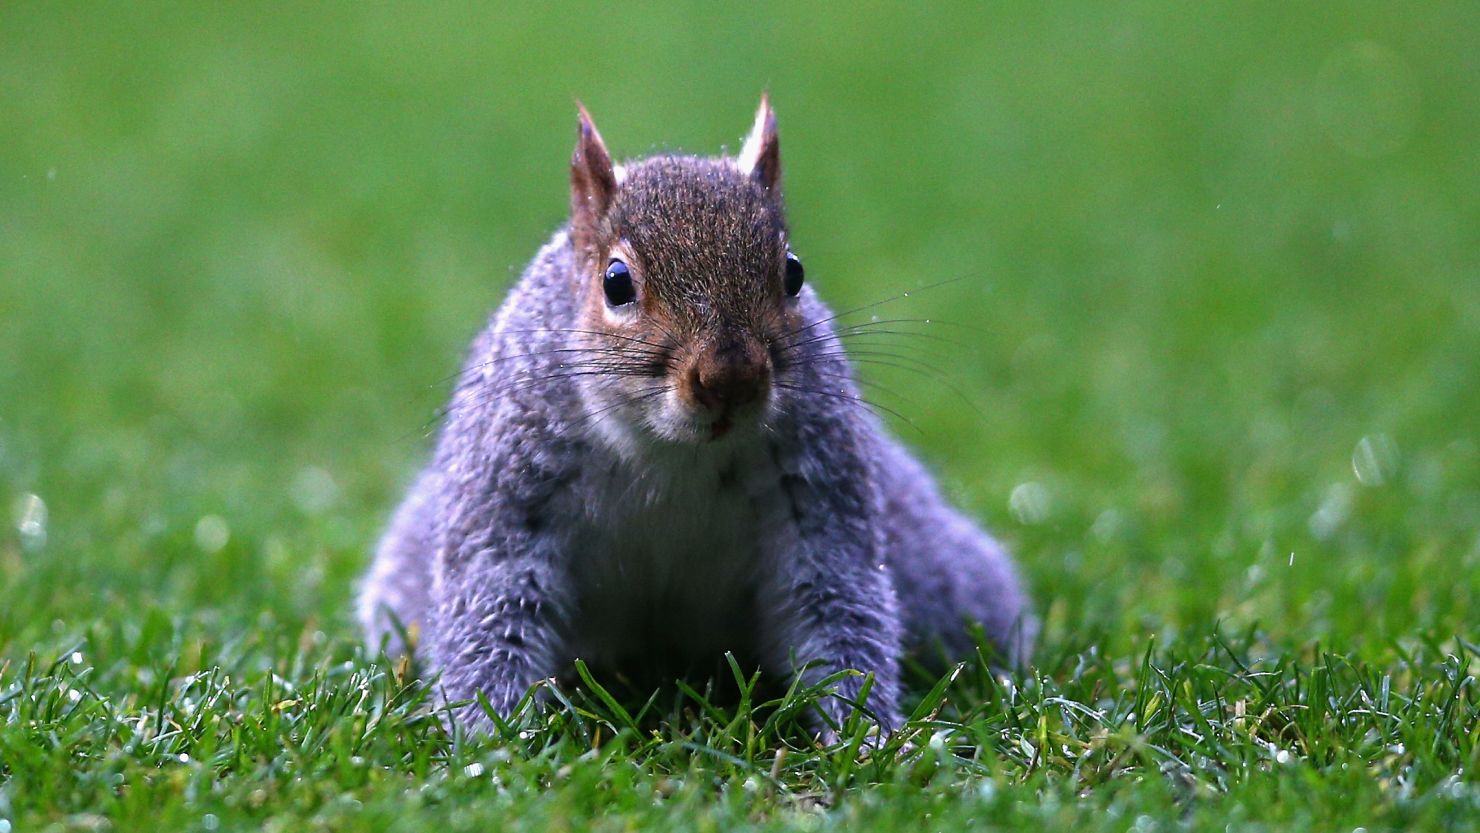 Squirrel invades pitch